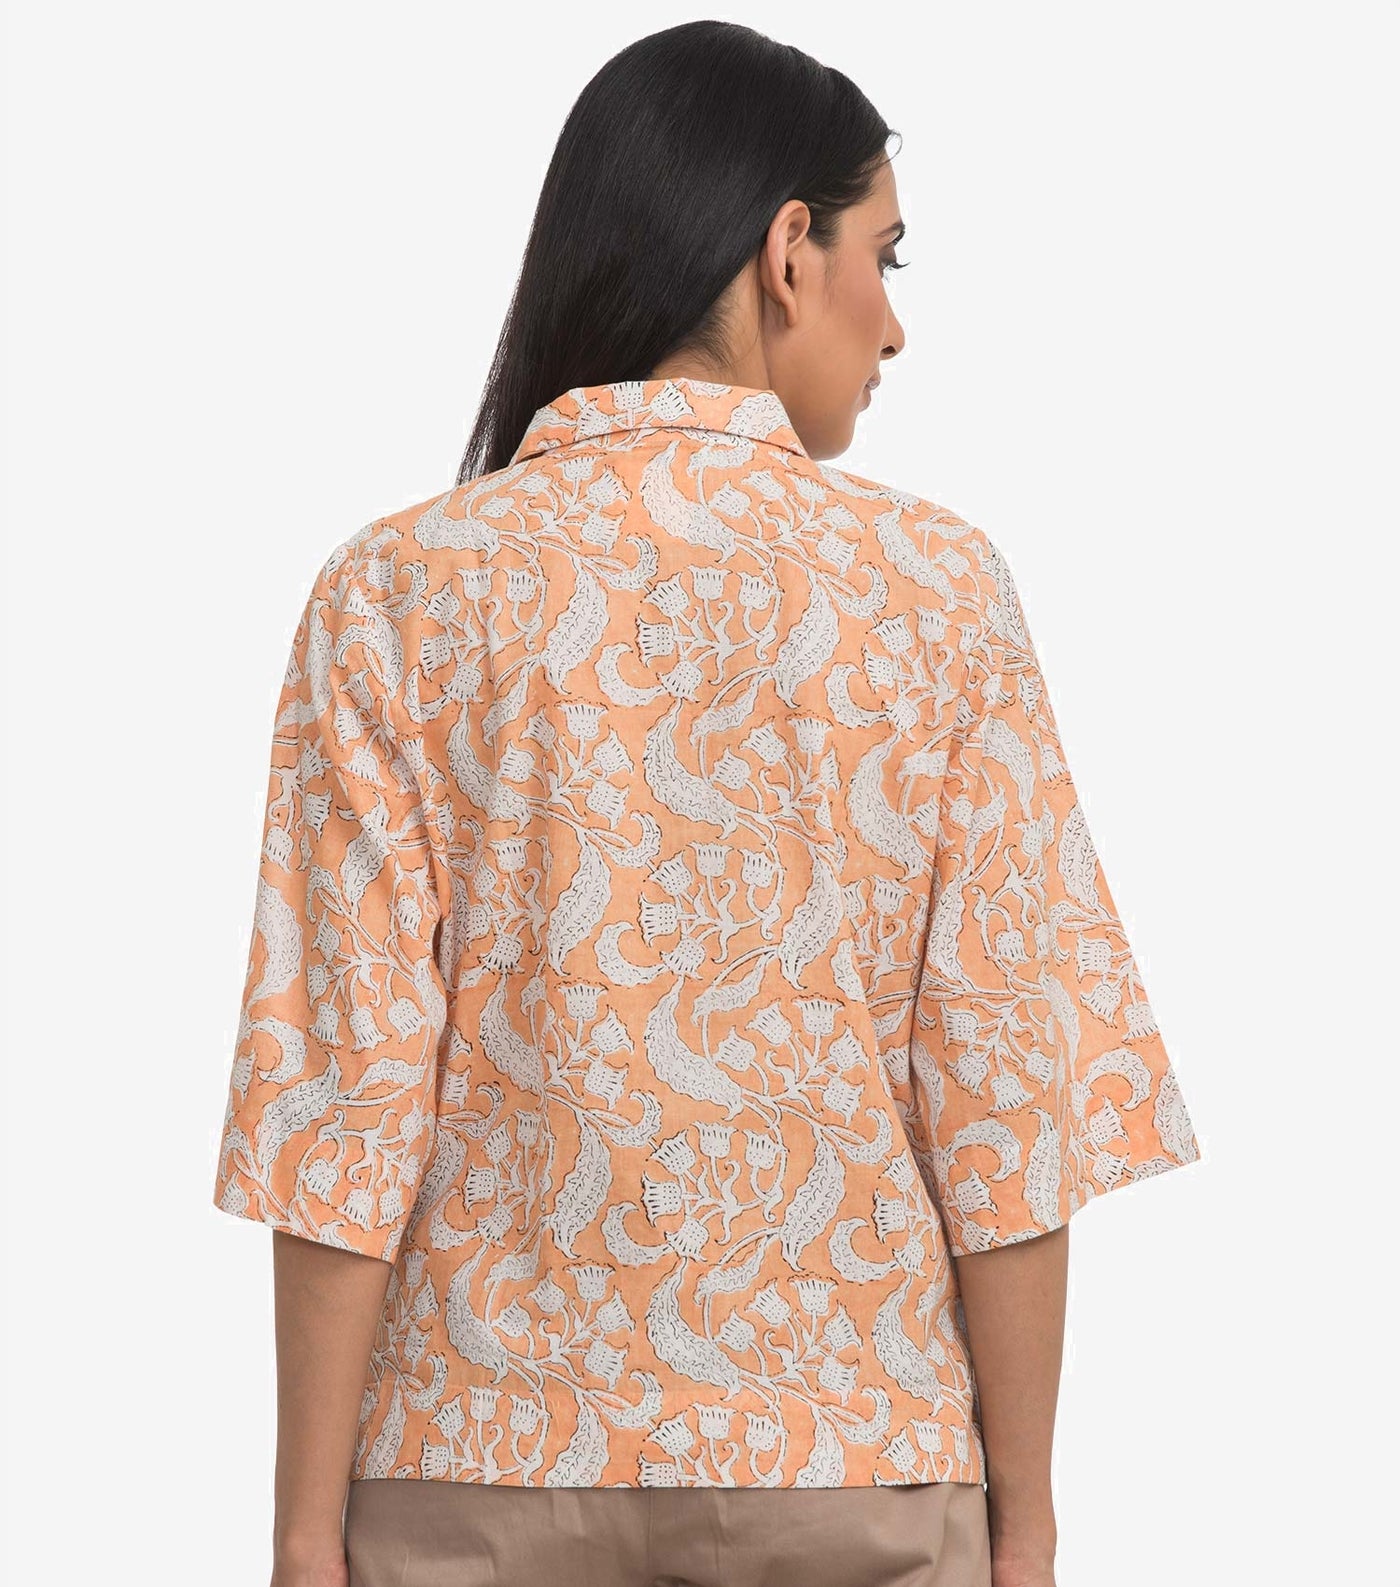 Peach printed cotton shirt